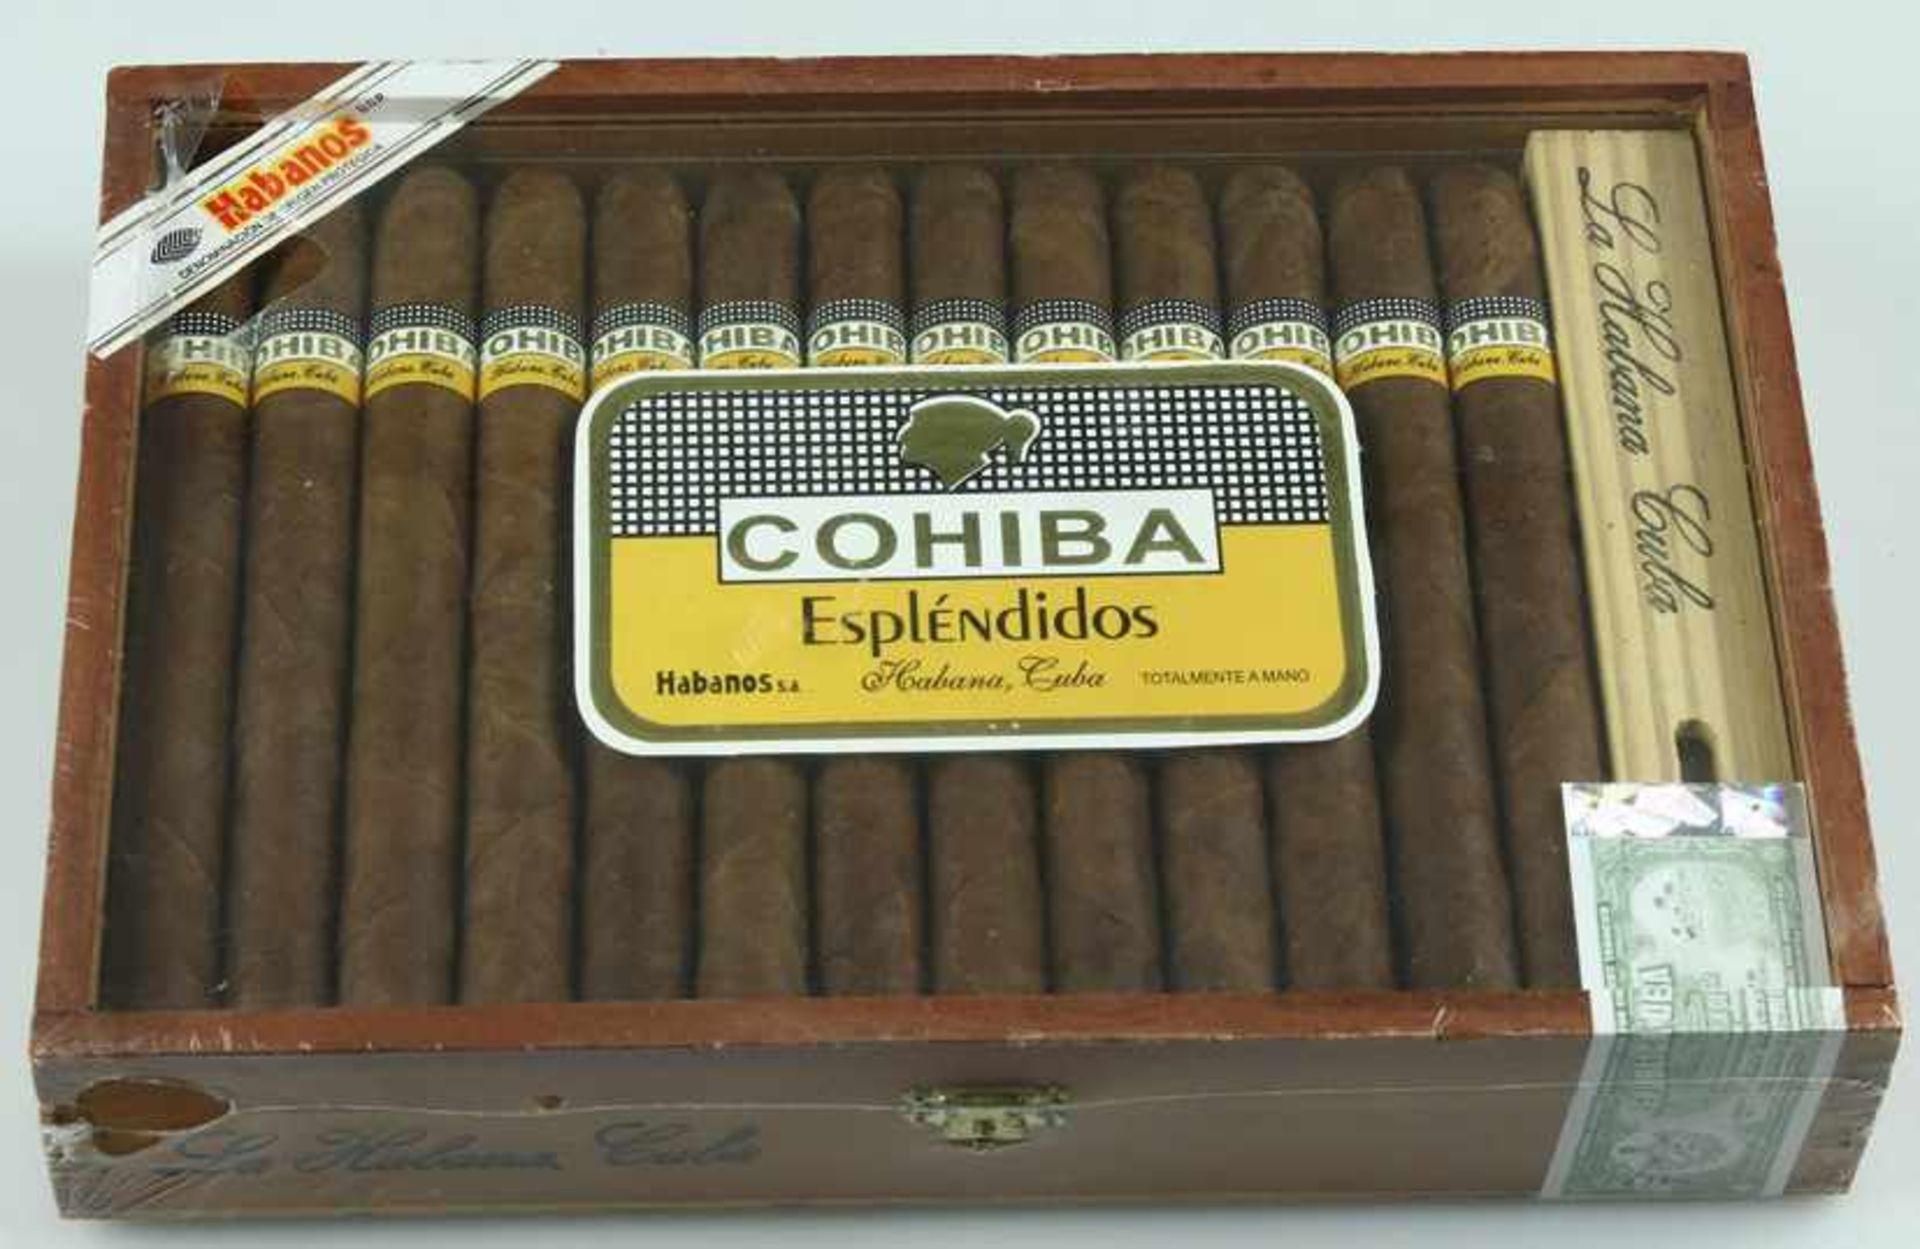 Kistje met 25 Cubaanse sigaren, Cohiba Espléndidos, verzegeld en geseald